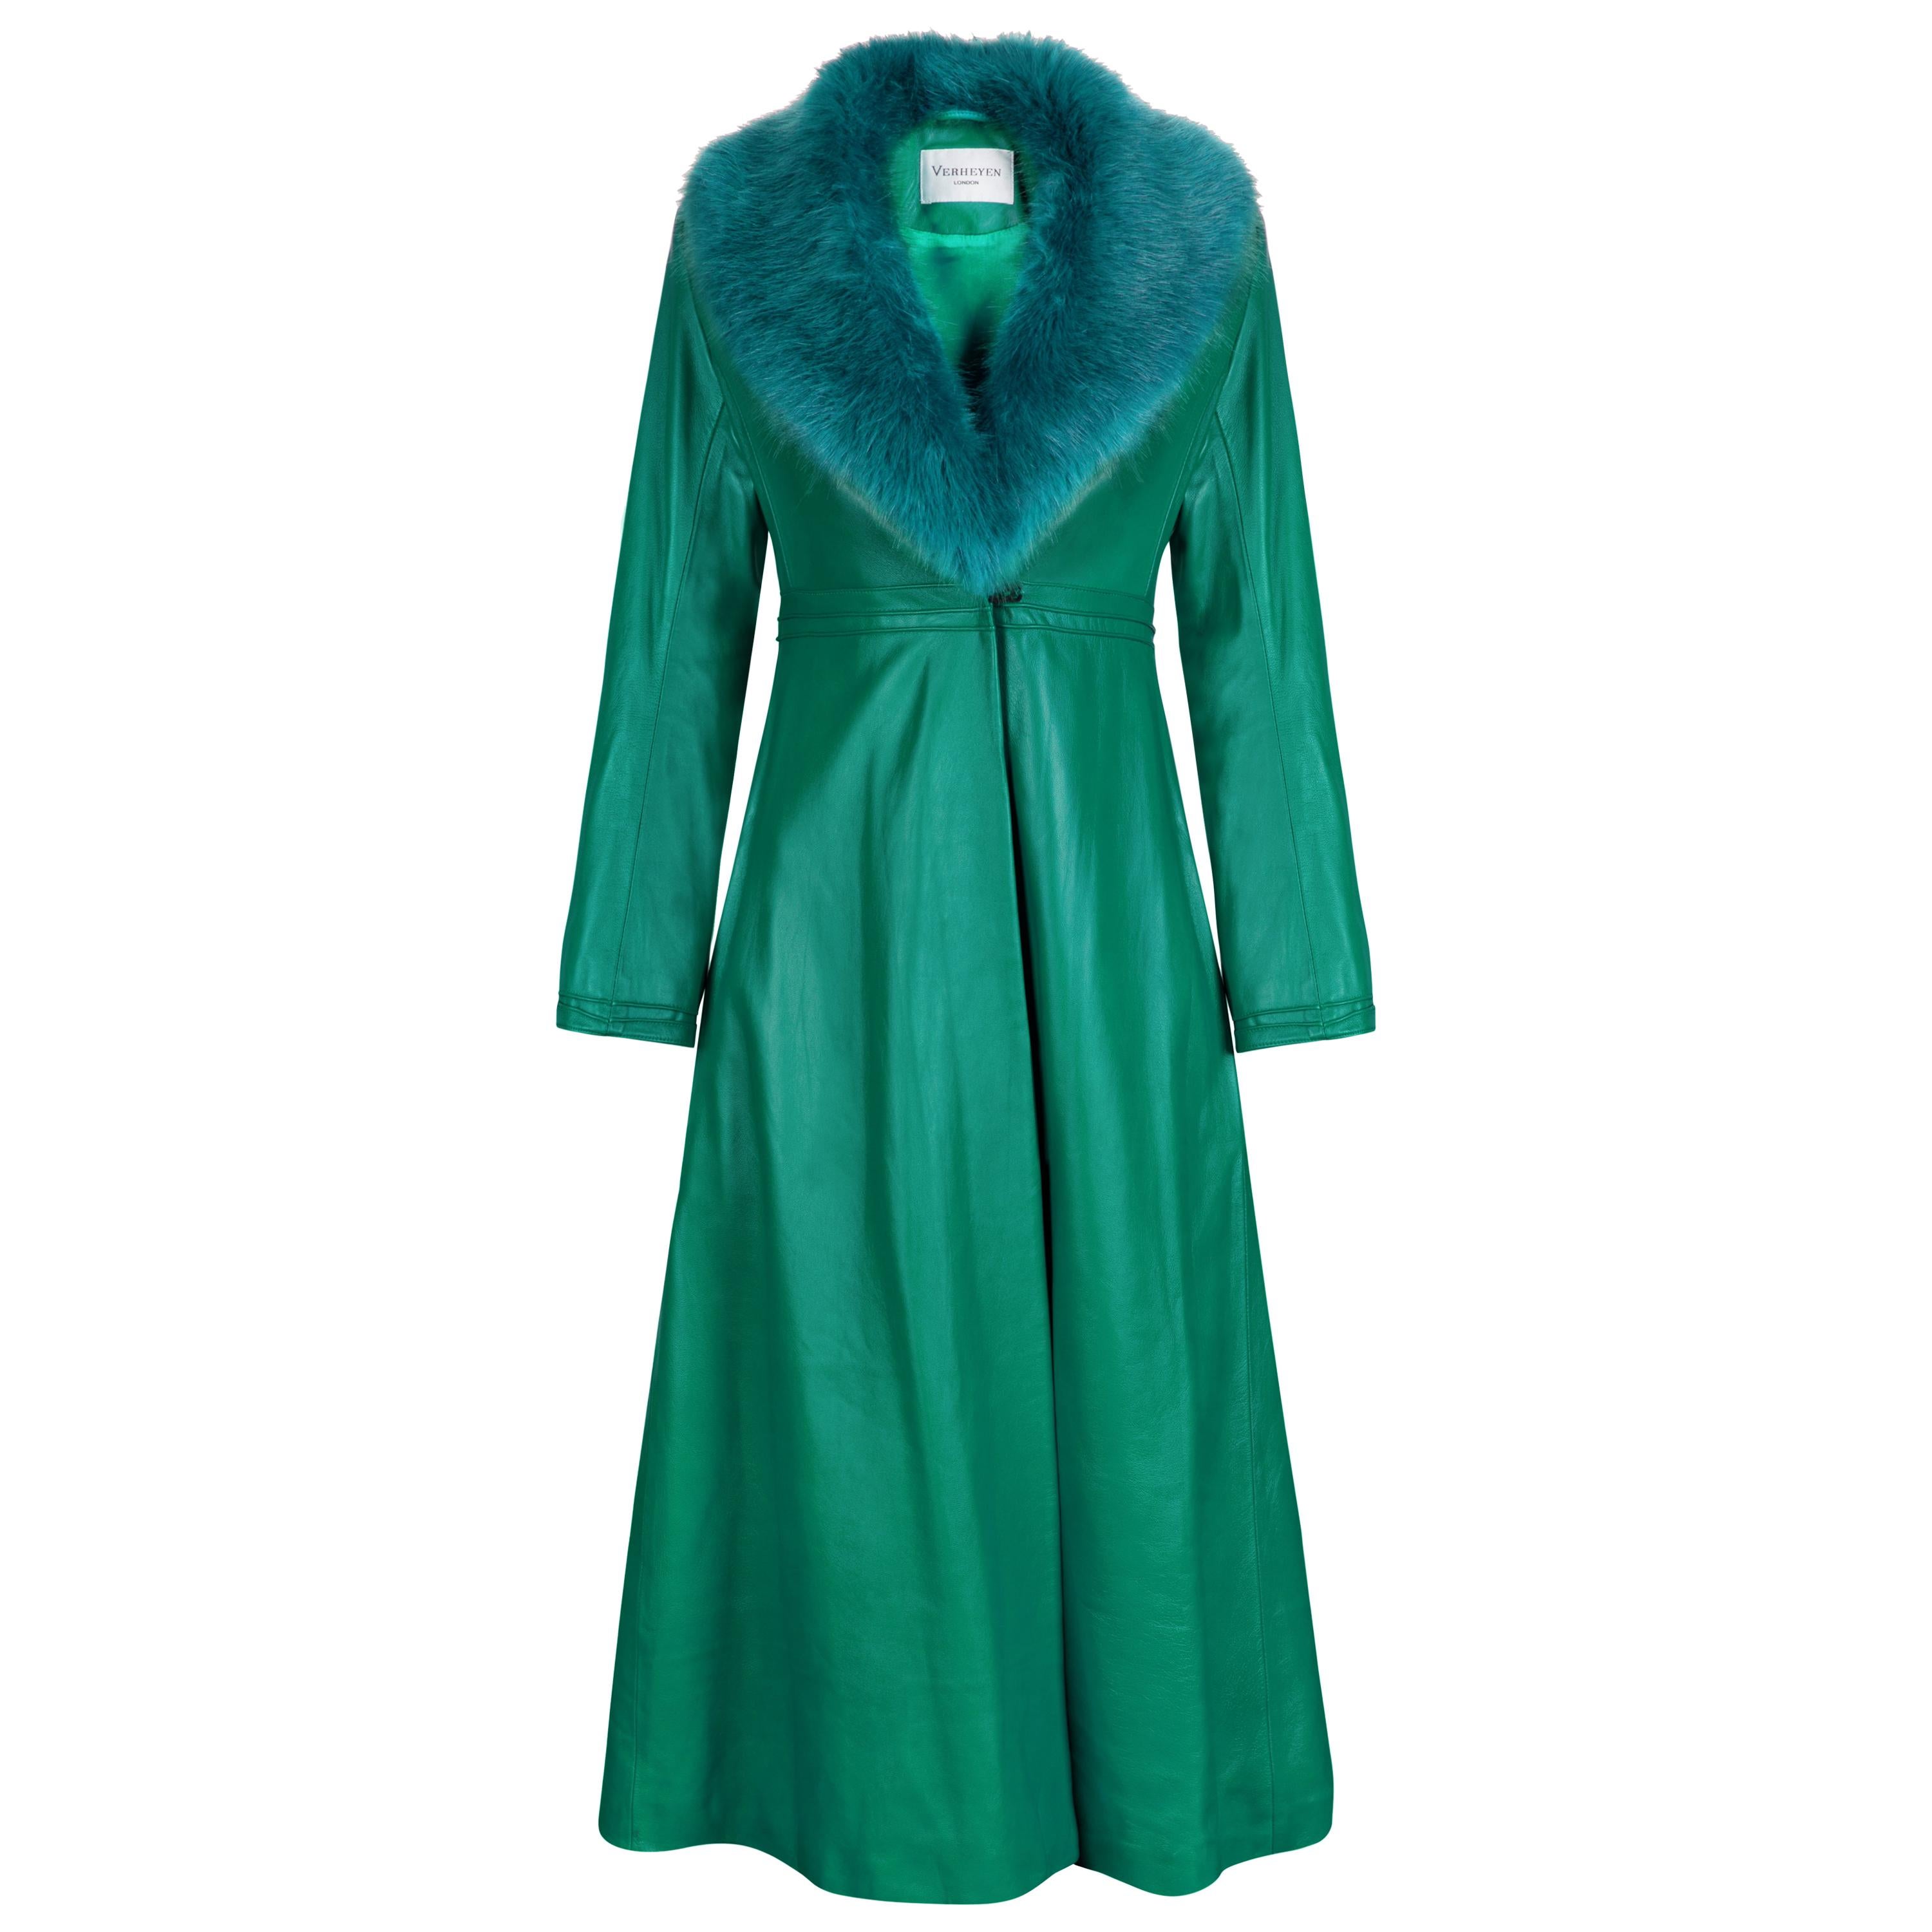 Verheyen London Edward Leather Coat in Green & Green Faux Fur - Size 6 UK 